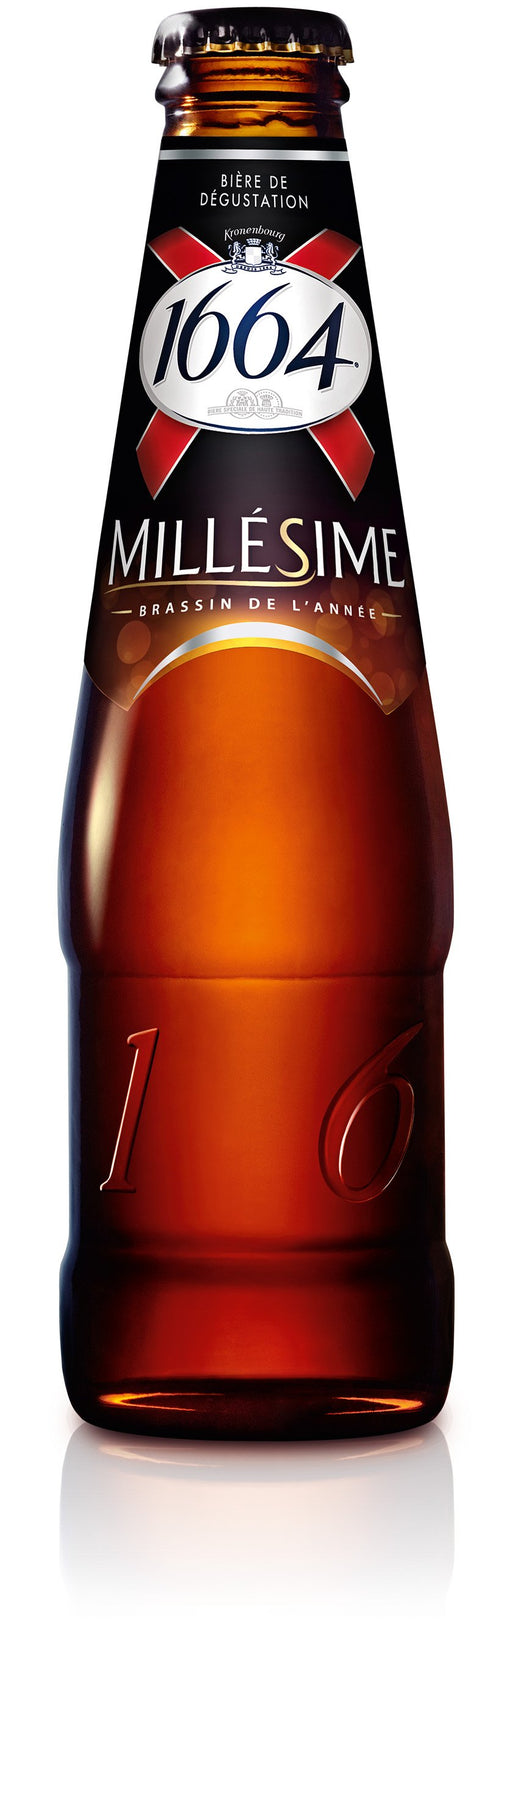 Bière 1664 Millésime Kronenbourg 25cl - Pack de 24